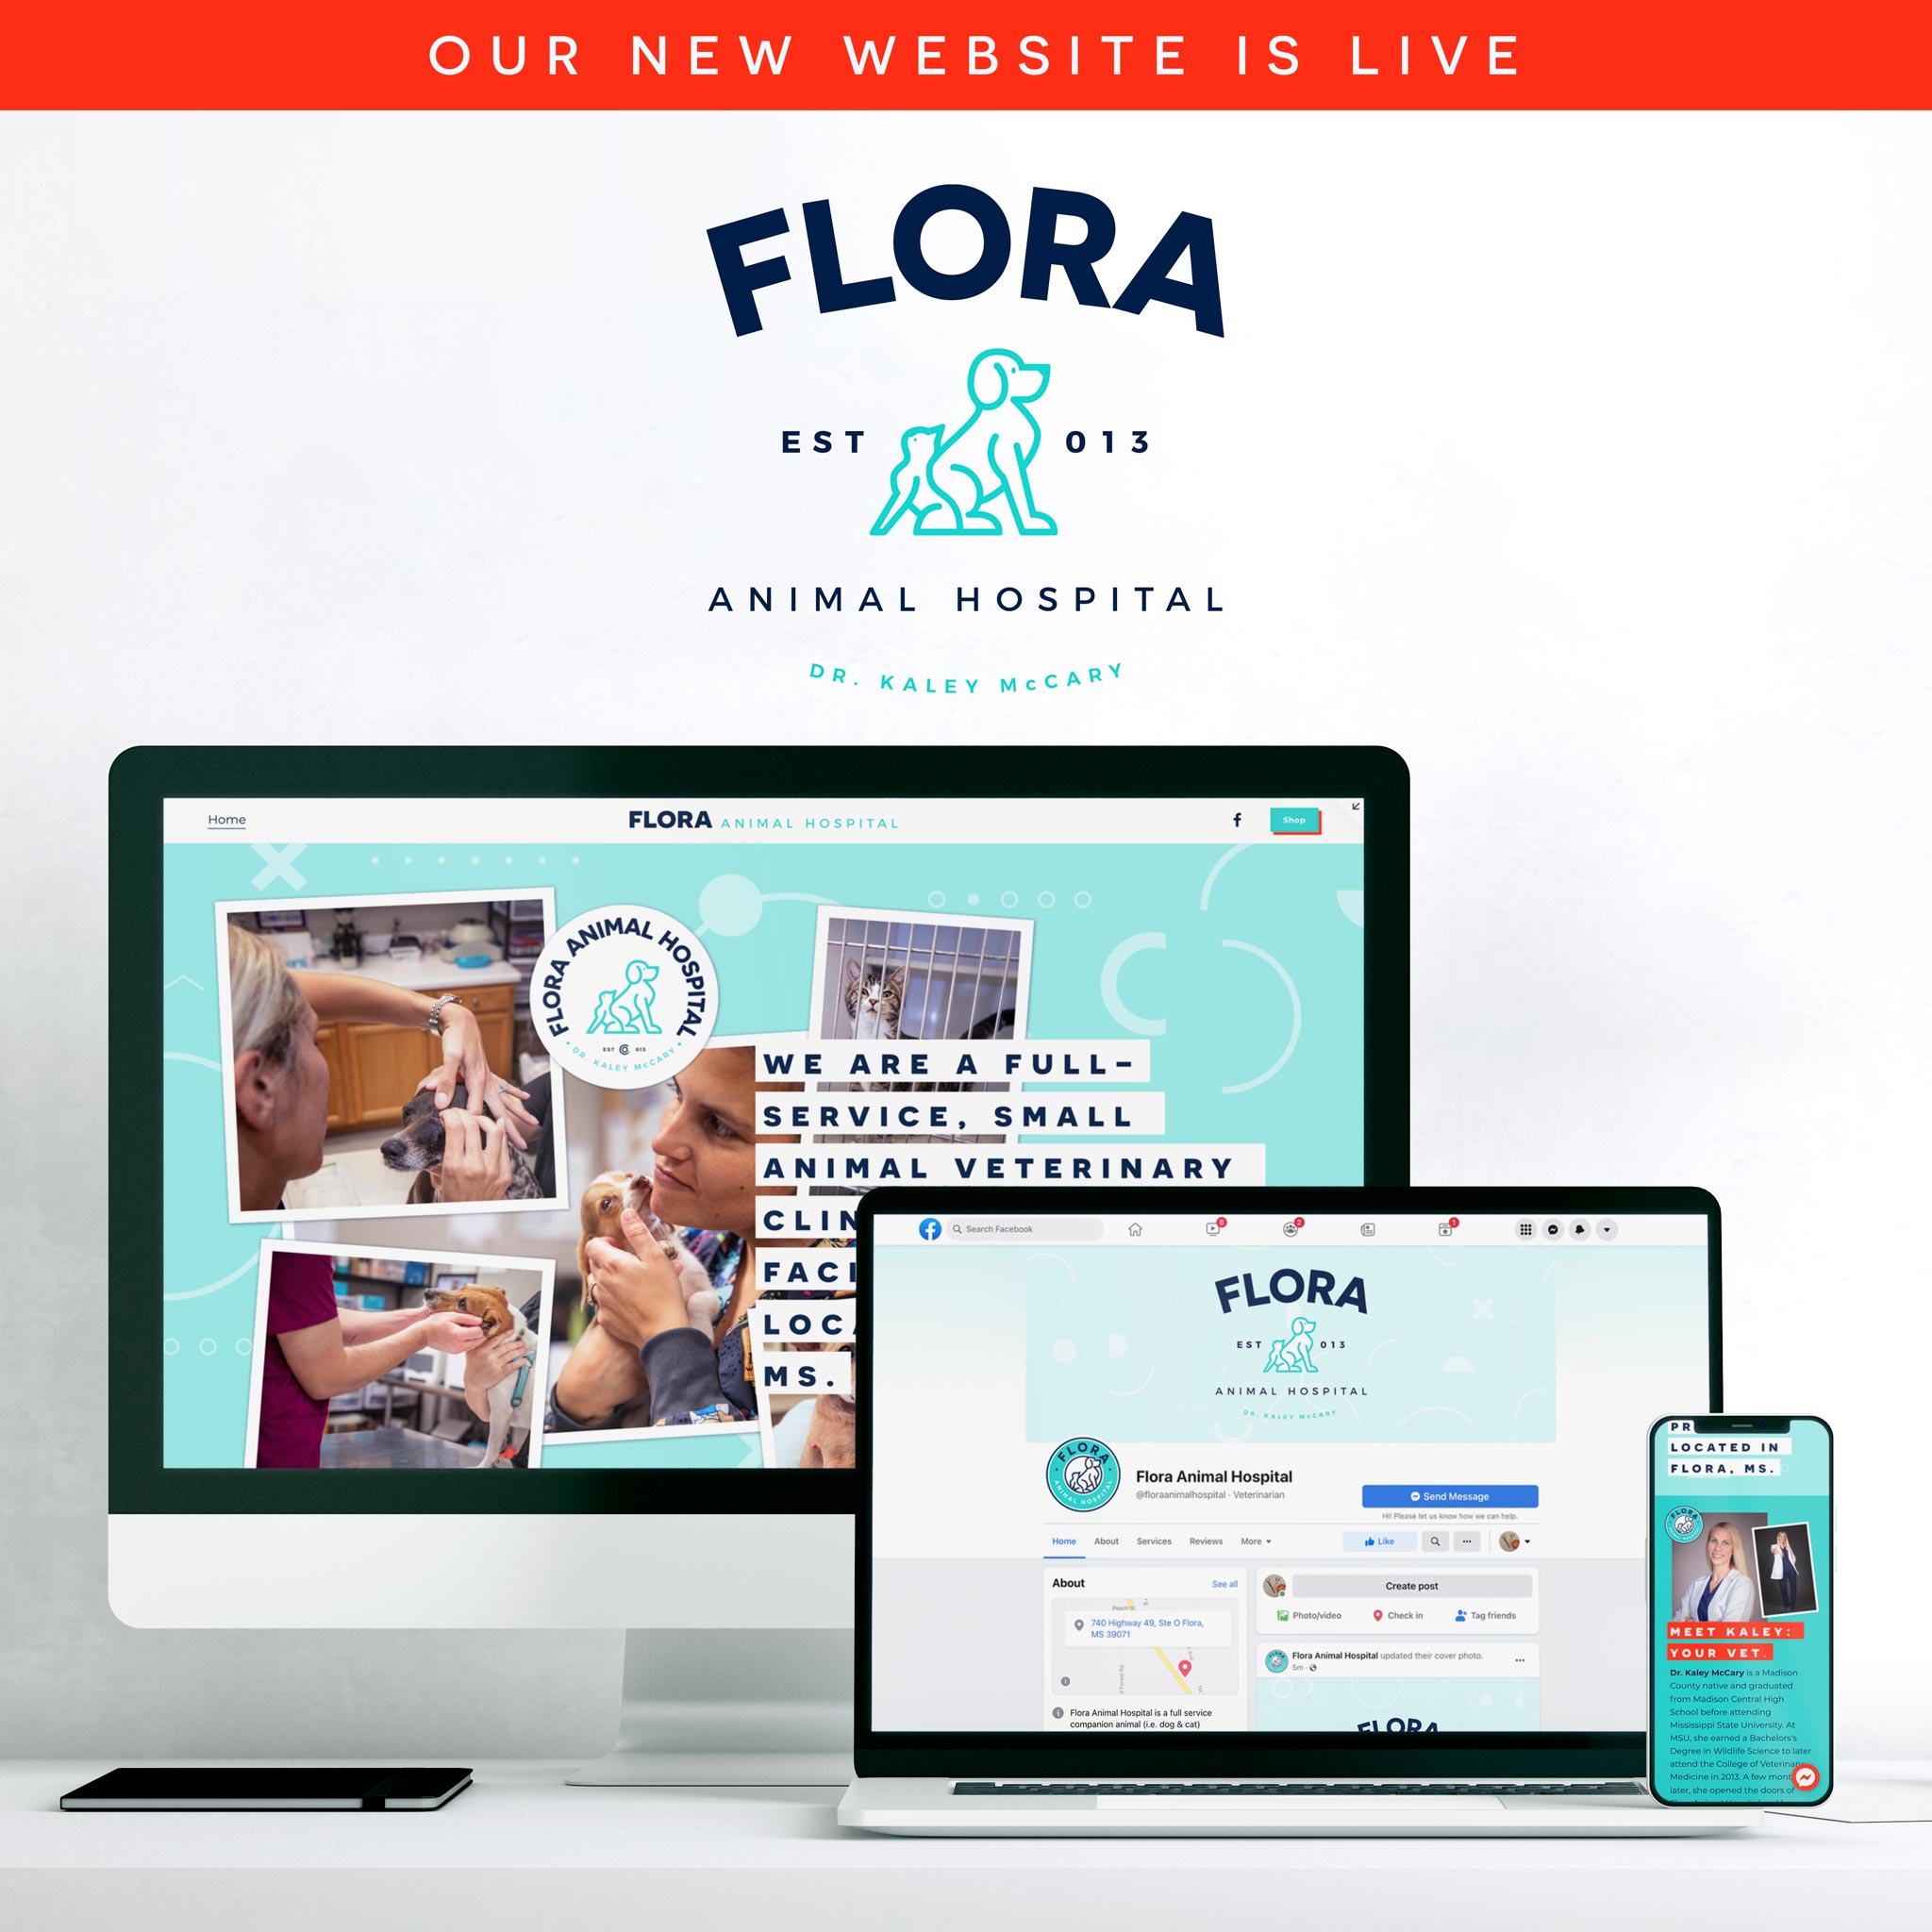 Flora Animal Hospital 740 US 49 Suite O, Flora Mississippi 39071